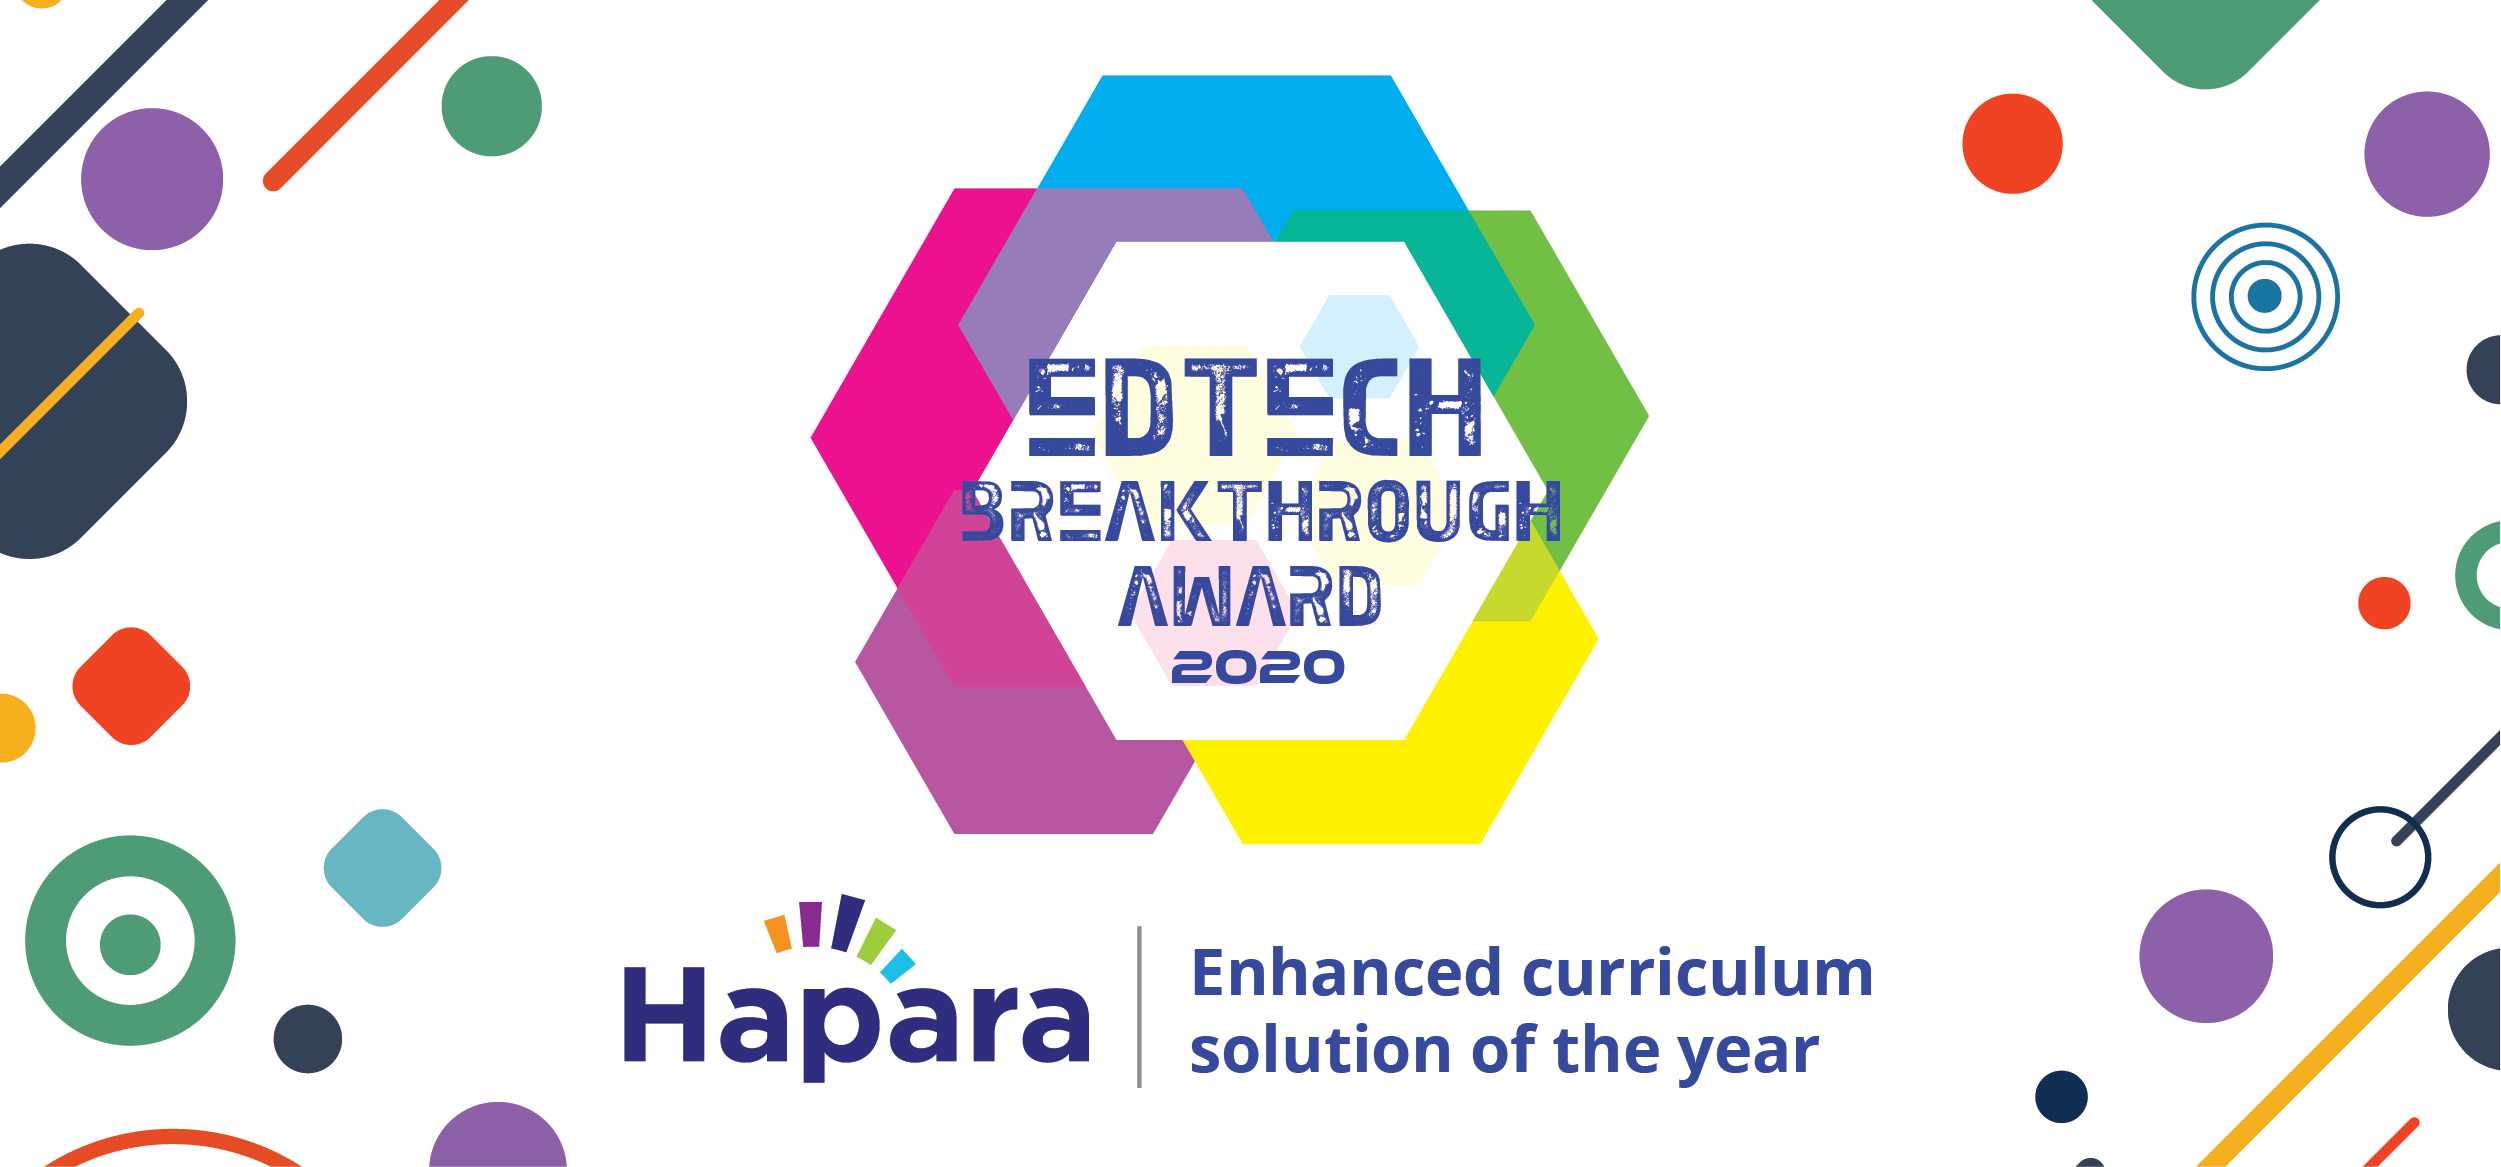 Edtech Breakthrough Award 2020